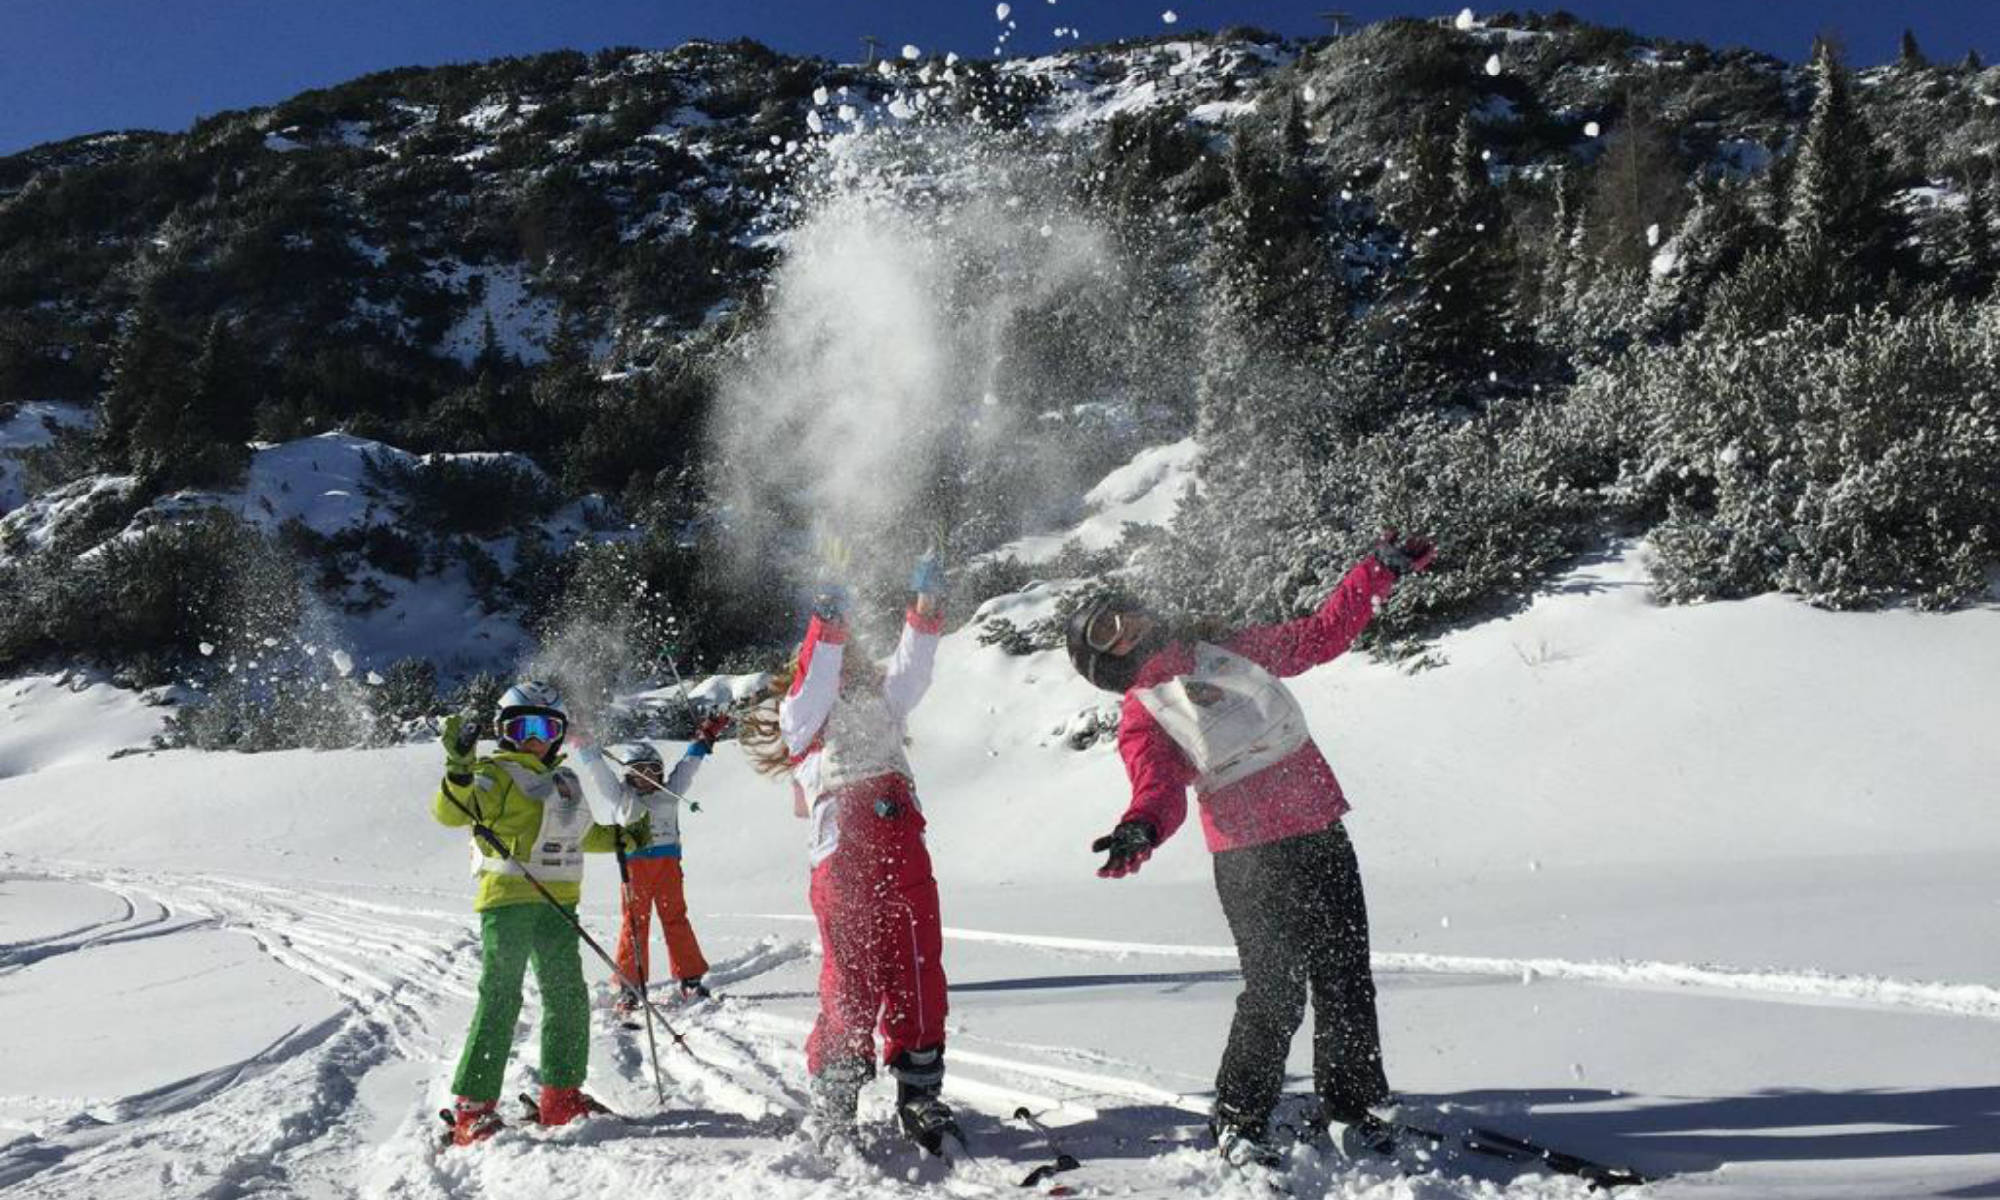 I partecipanti di un corso di sci ad Andalo lanciano la neve in aria.